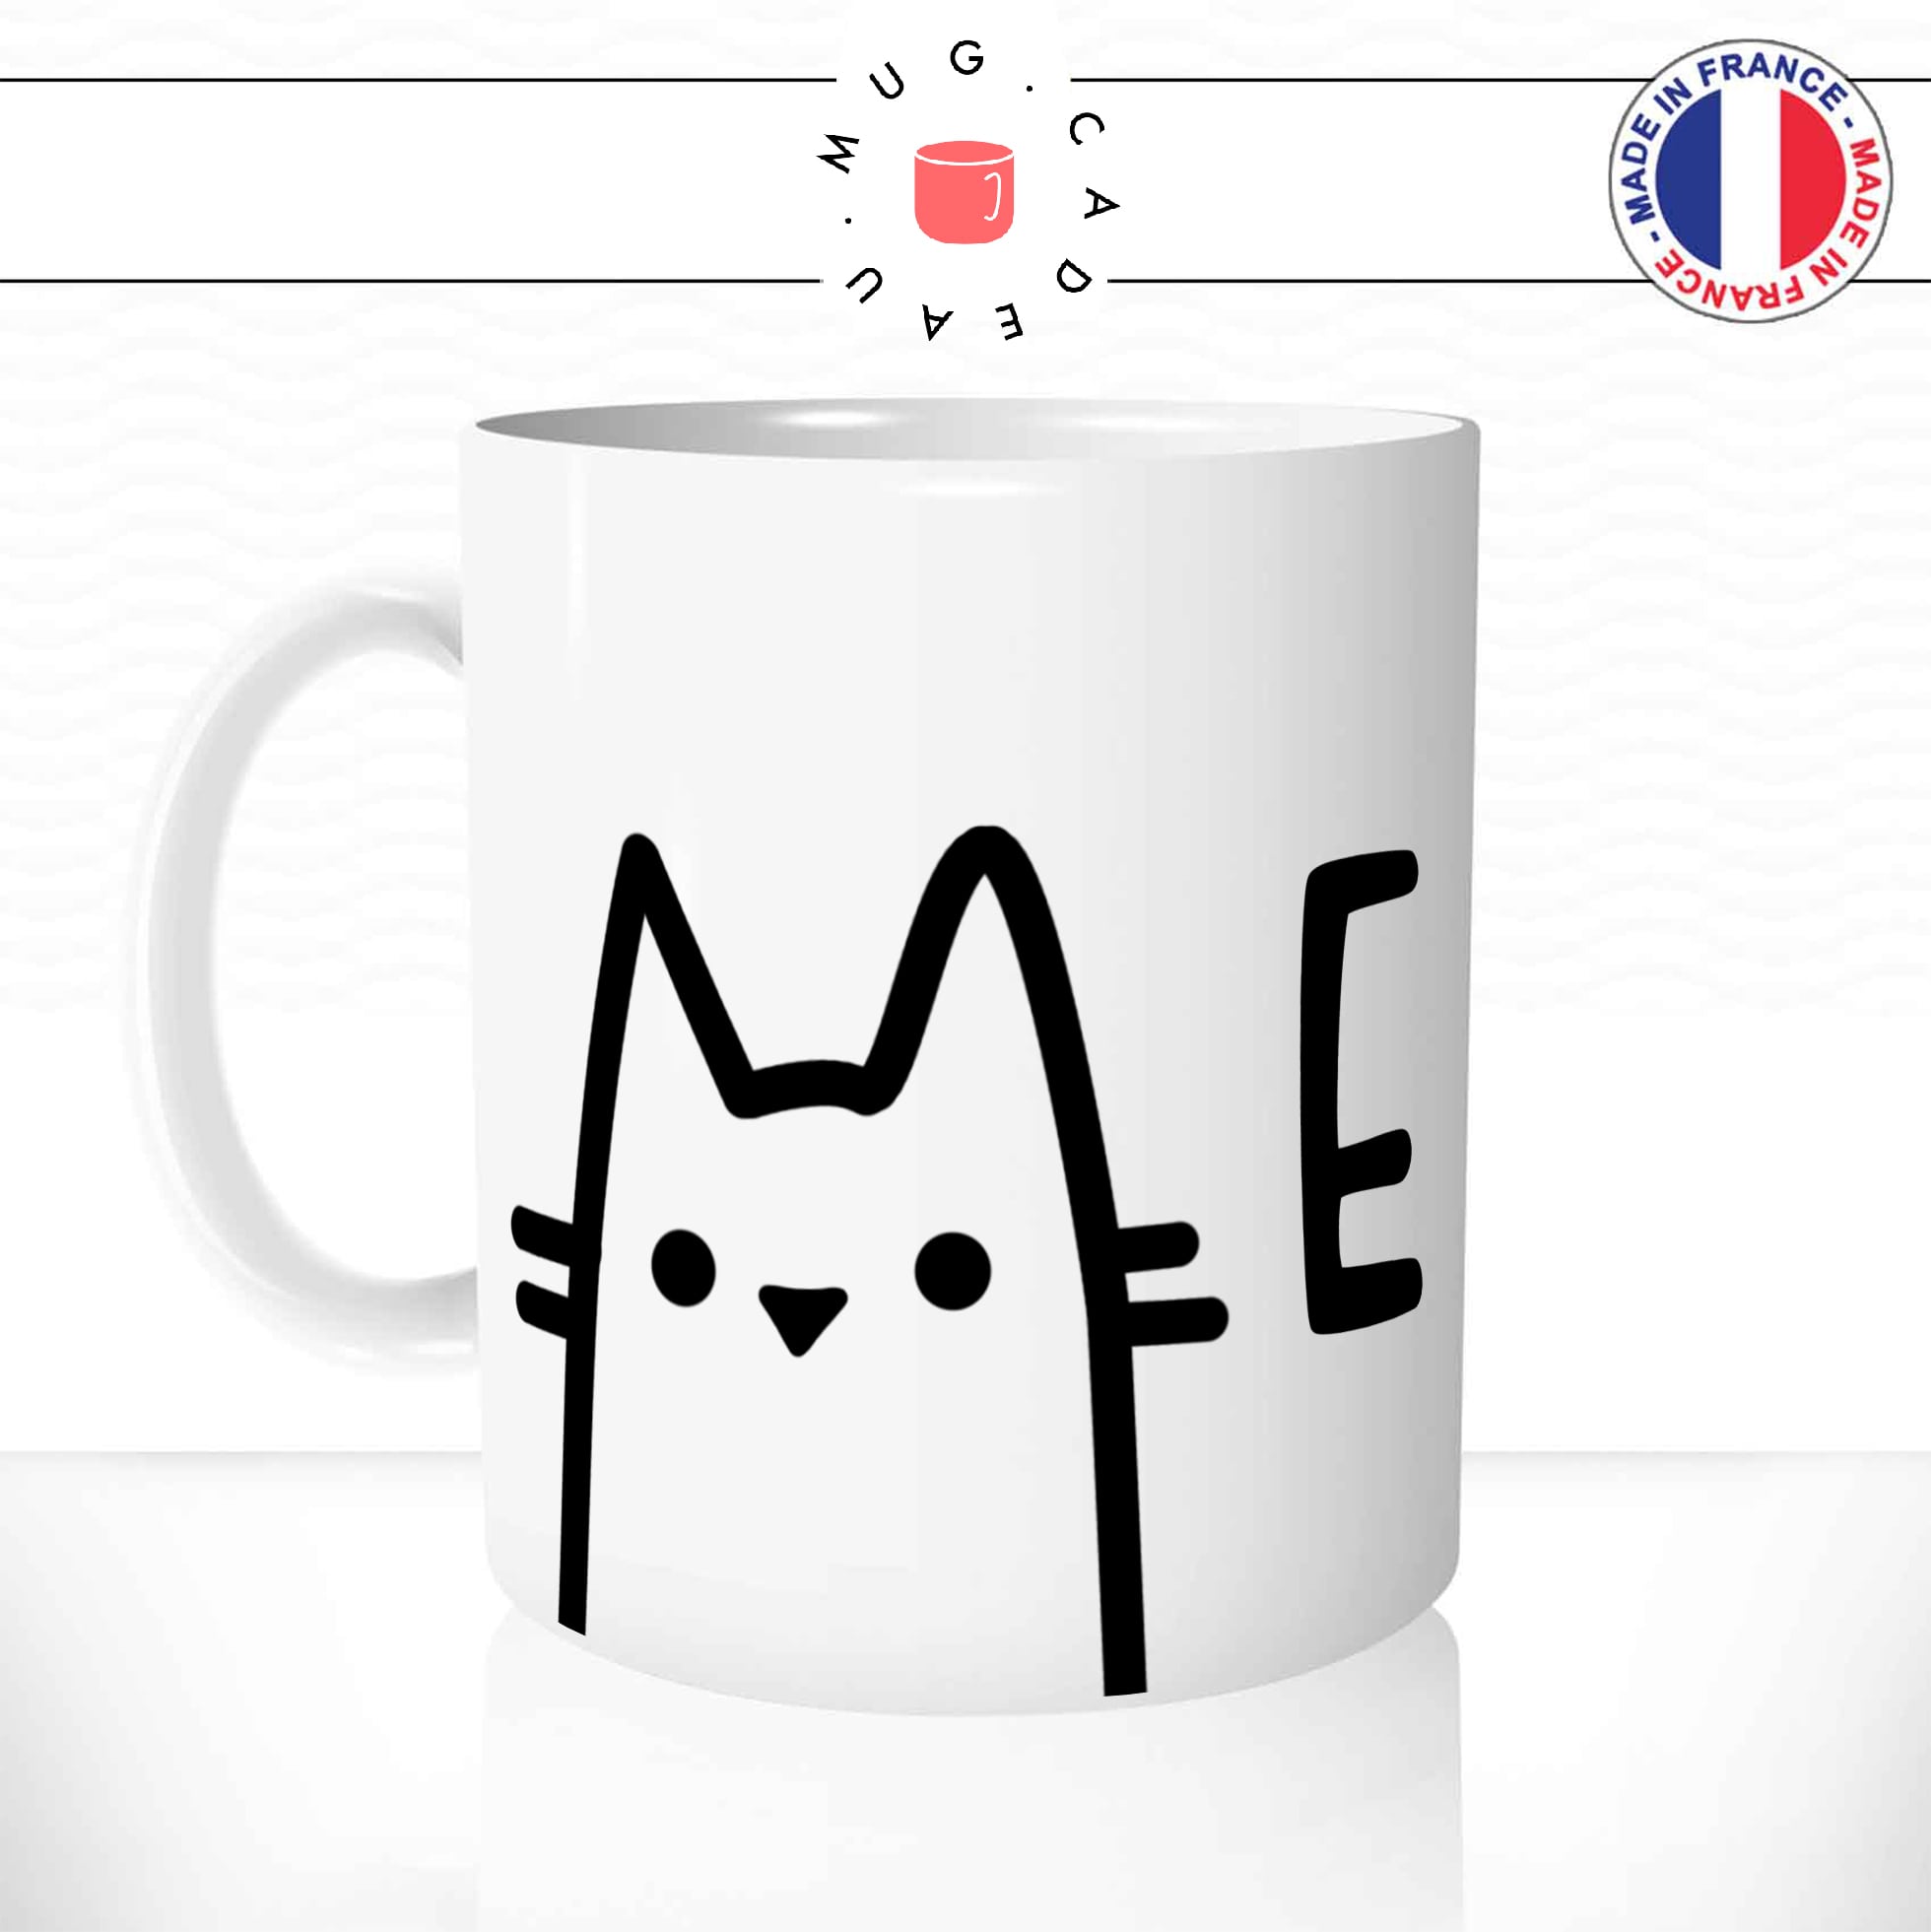 mug-tasse-animal-biche-chats-chatons-meow-miaou-drole-mignon-dessin-animé-classique-culte-cool-fun-mugs-tasses-café-thé-idée-cadeau-original-personnalisé-personnalisable1